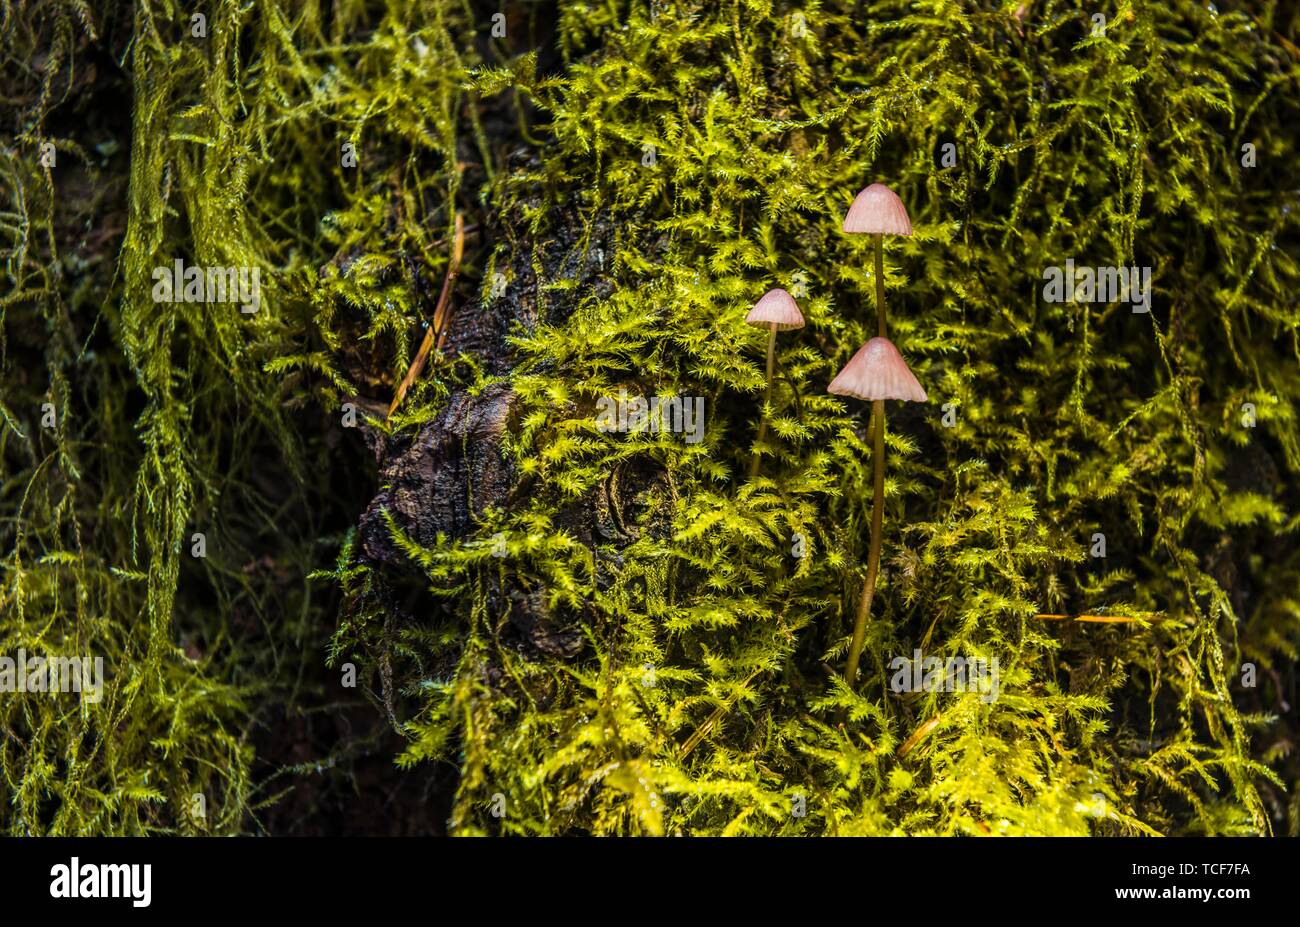 Petits Bonnets (Mycena) poussent sur mossed tronc d'arbre, forêt tropicale, Mt. Baker-Snoqualmie National Forest, North Carolina, USA, Amérique du Nord Banque D'Images